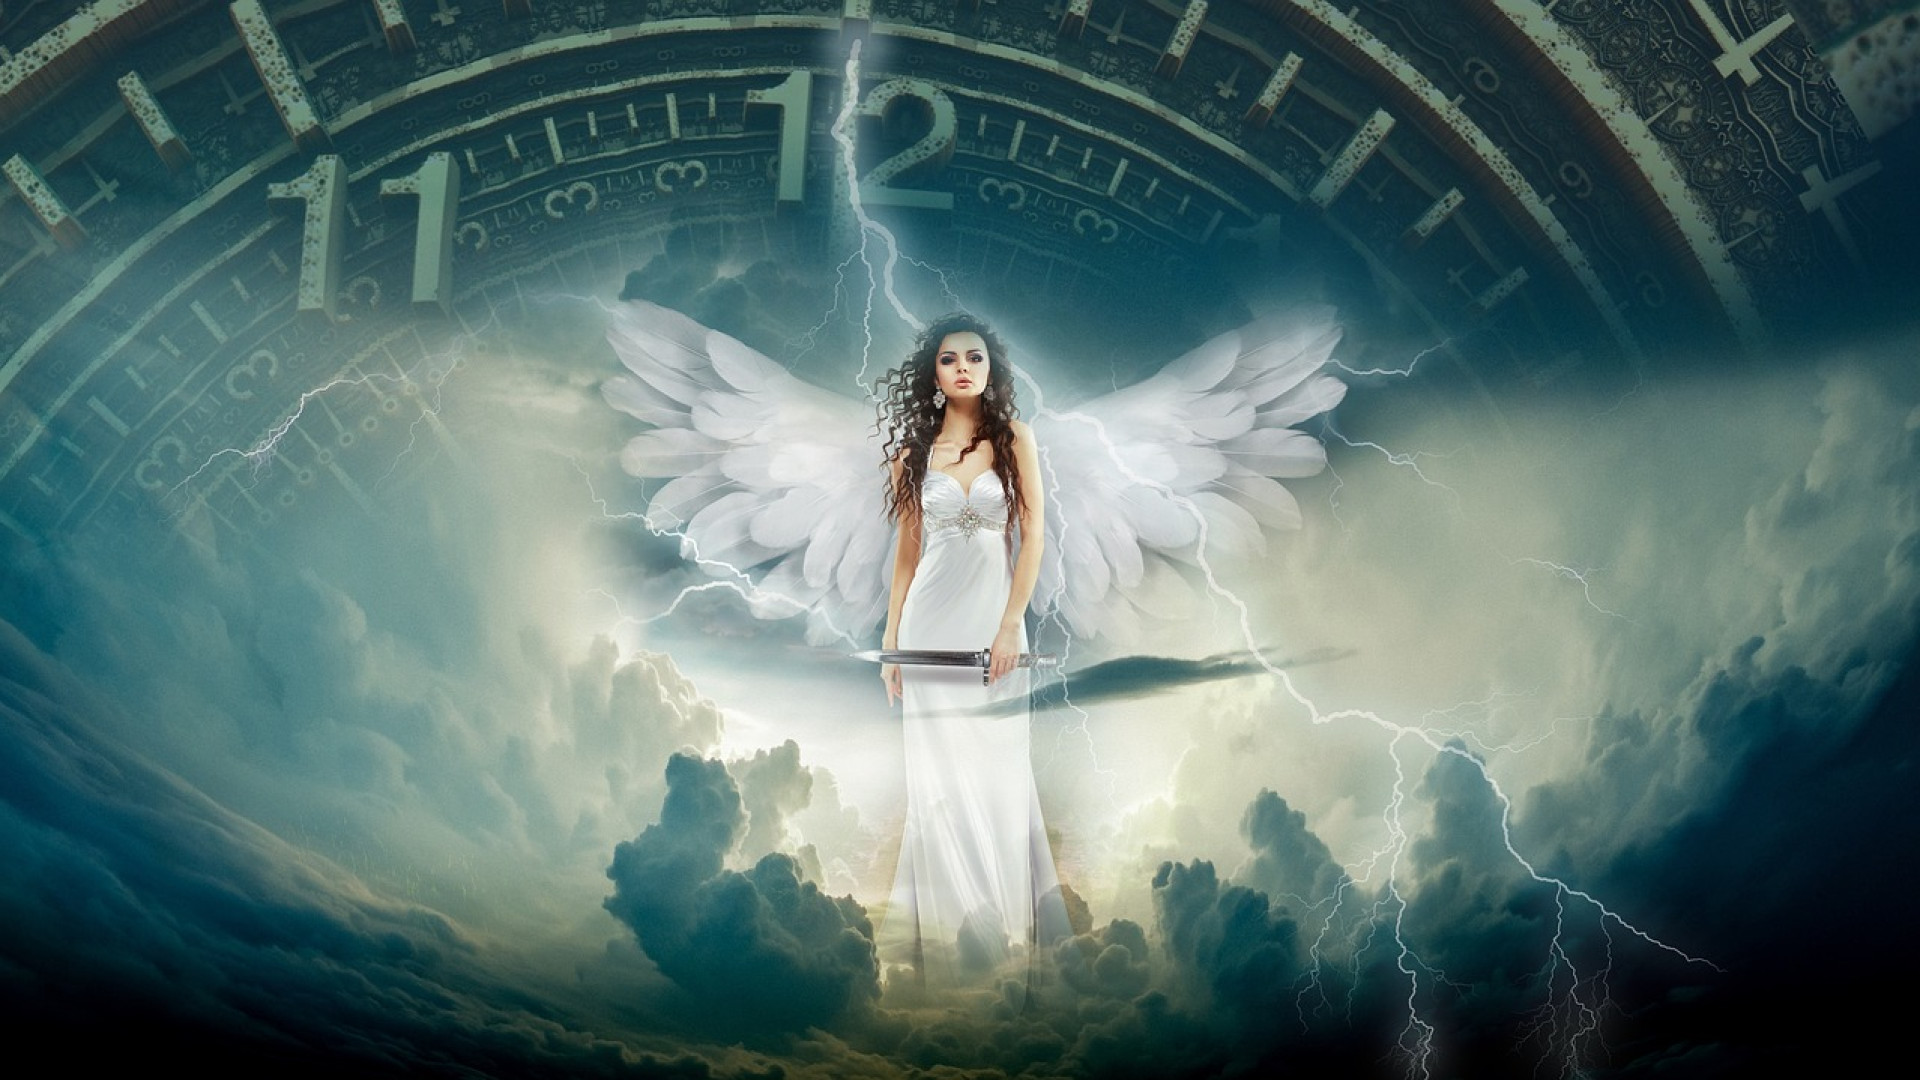 Les mystères de l'ésotérisme : anges gardiens et heures miroirs